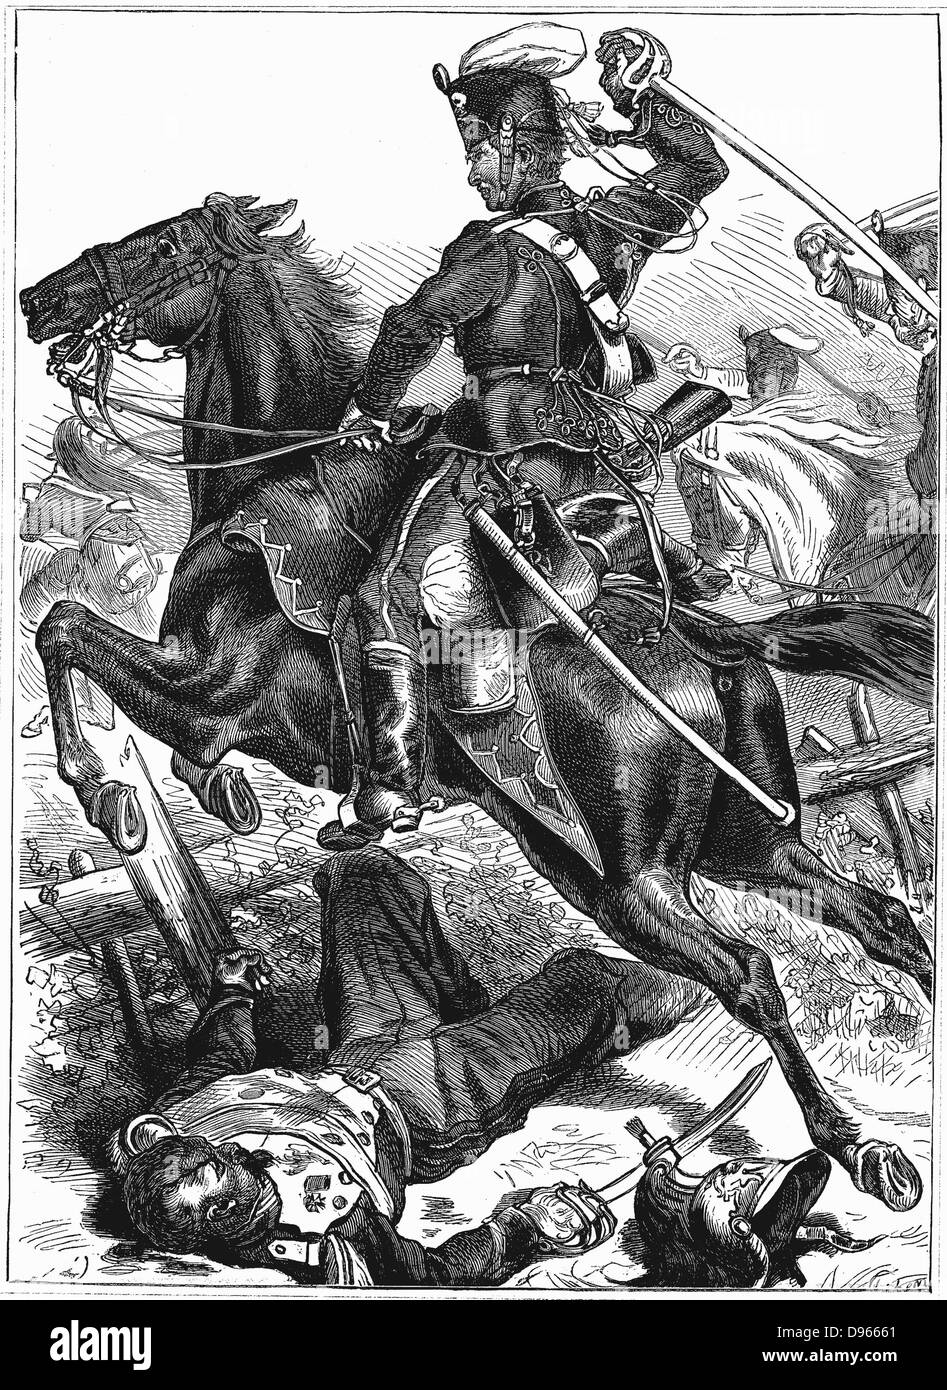 Guerre franco-prussienne de 1870-1871 : Hussard prussien le chargement avec épée nue. La gravure sur bois. Banque D'Images